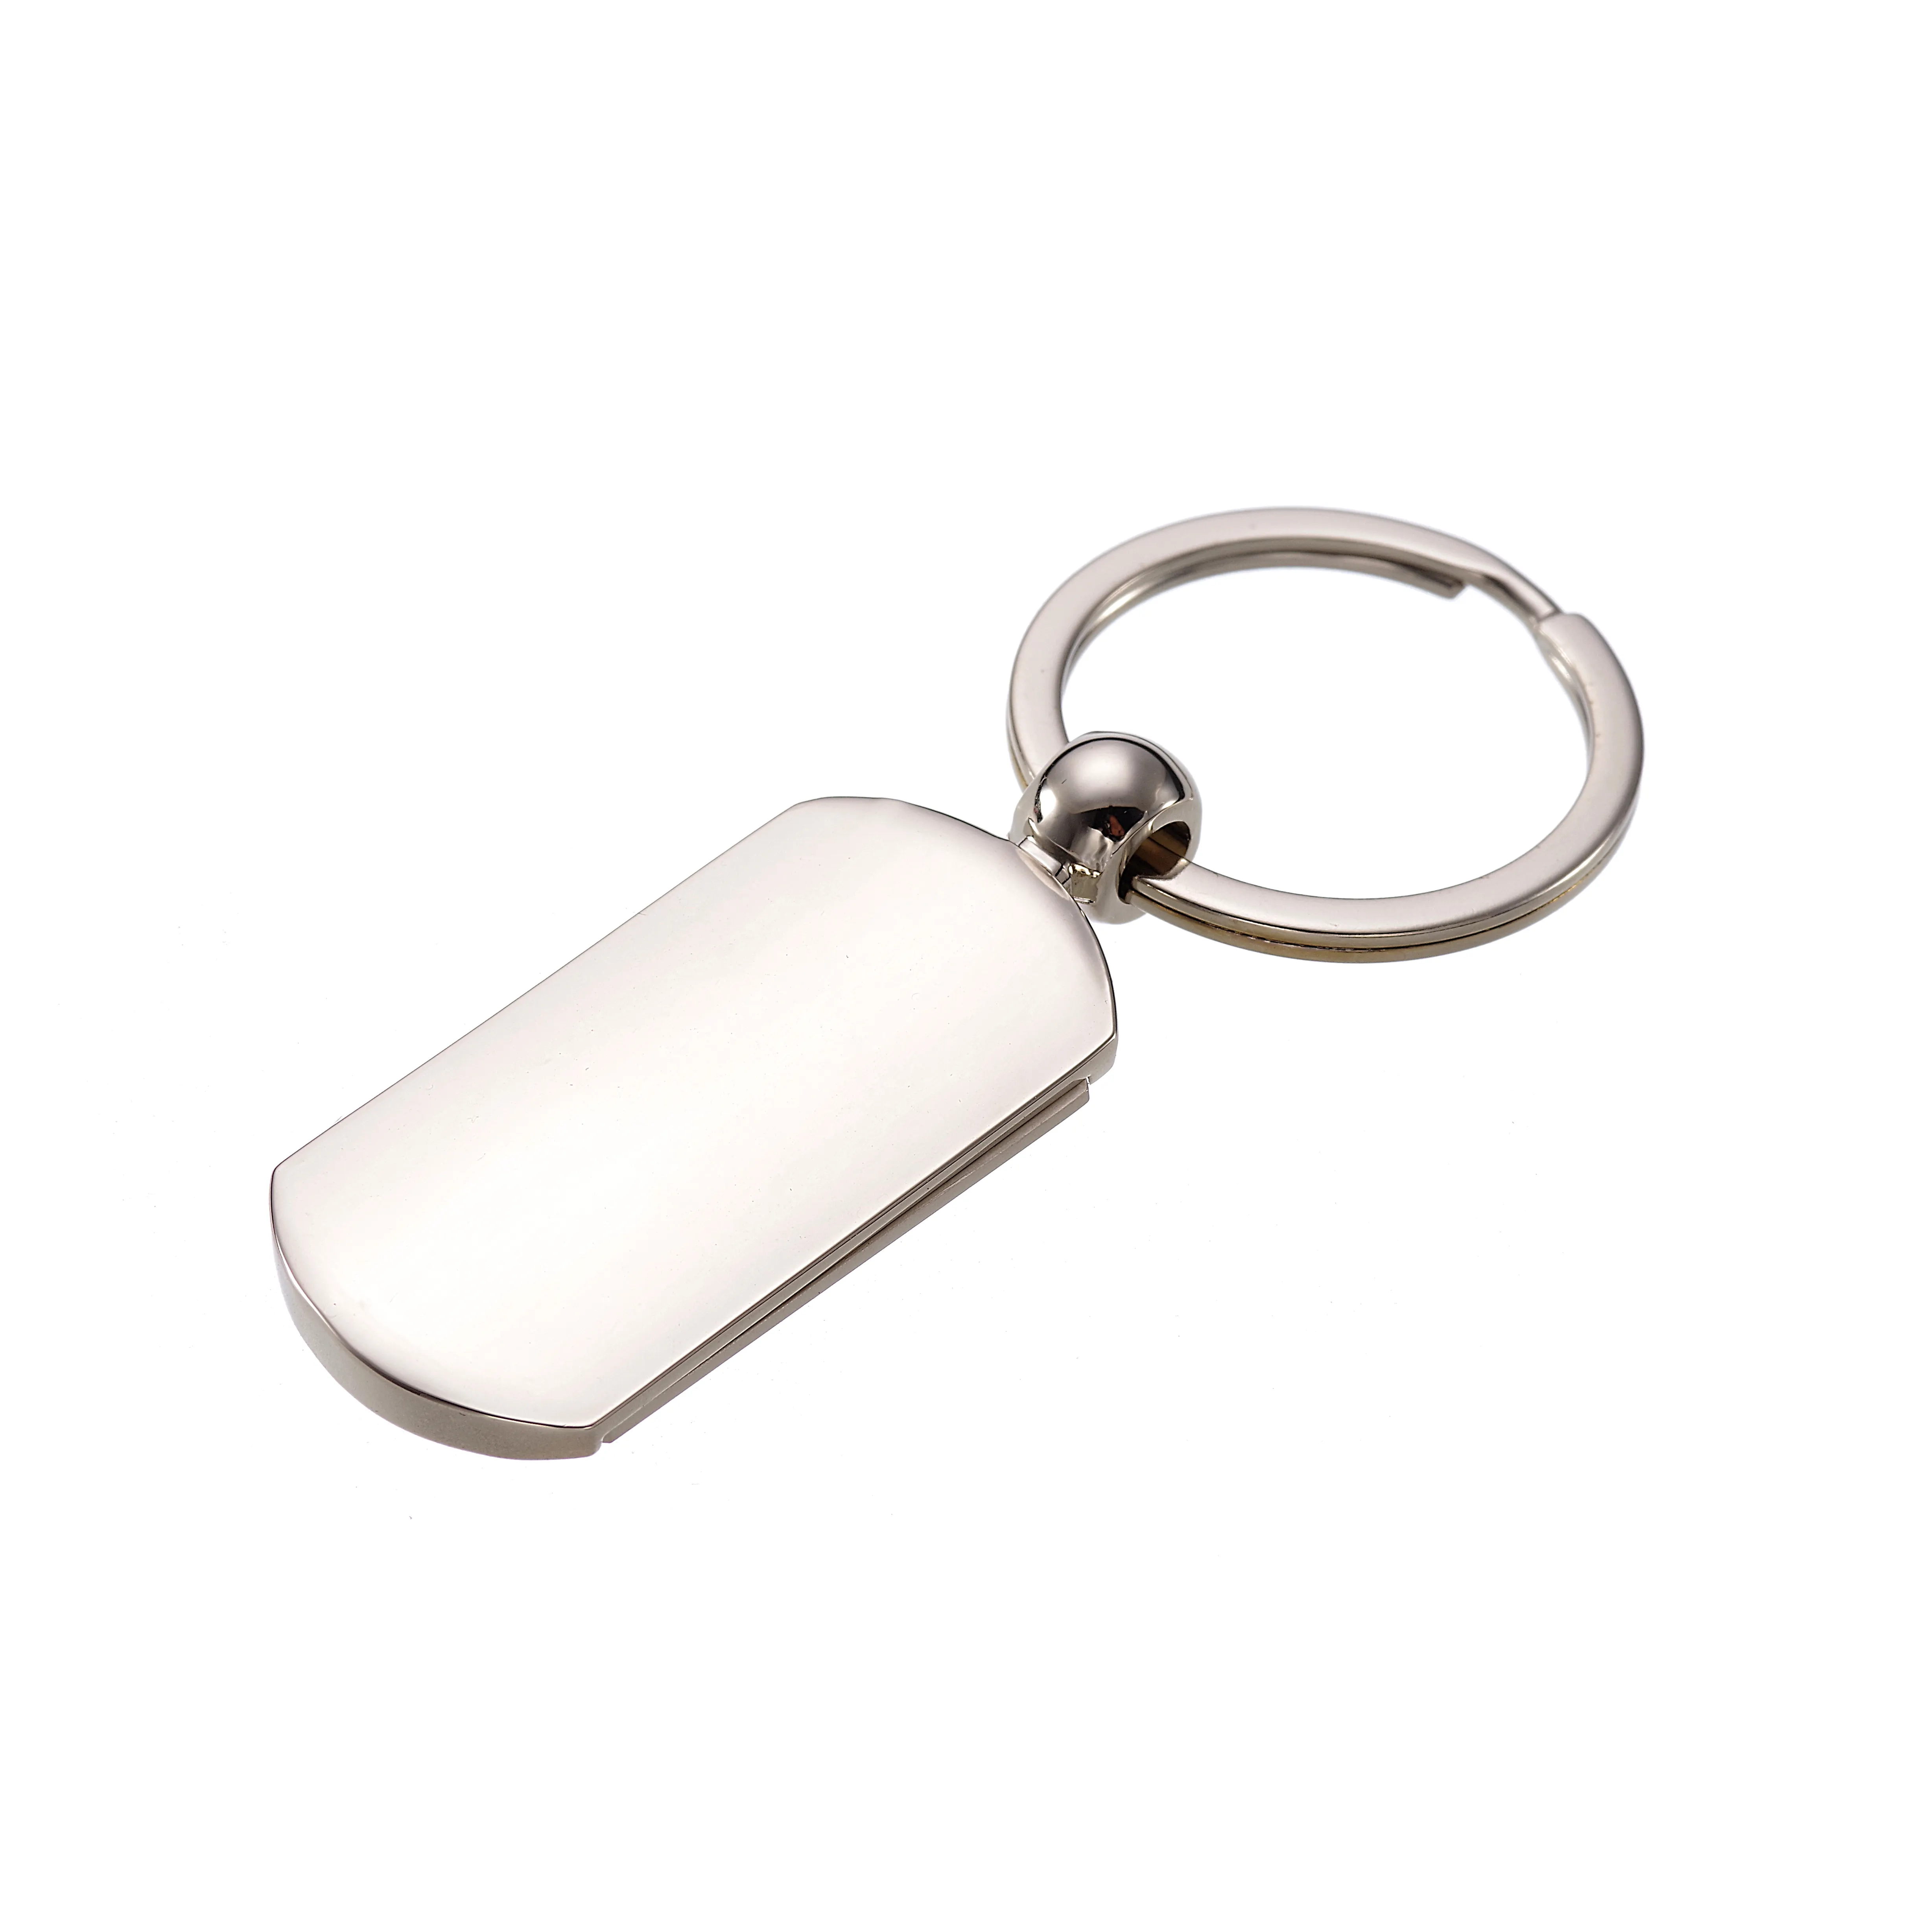 Grosir gantungan kunci kulit logo kustom warna-warni untuk pria gantungan kunci kulit Pu gantungan kunci mobil gantungan kunci untuk kunci mobil